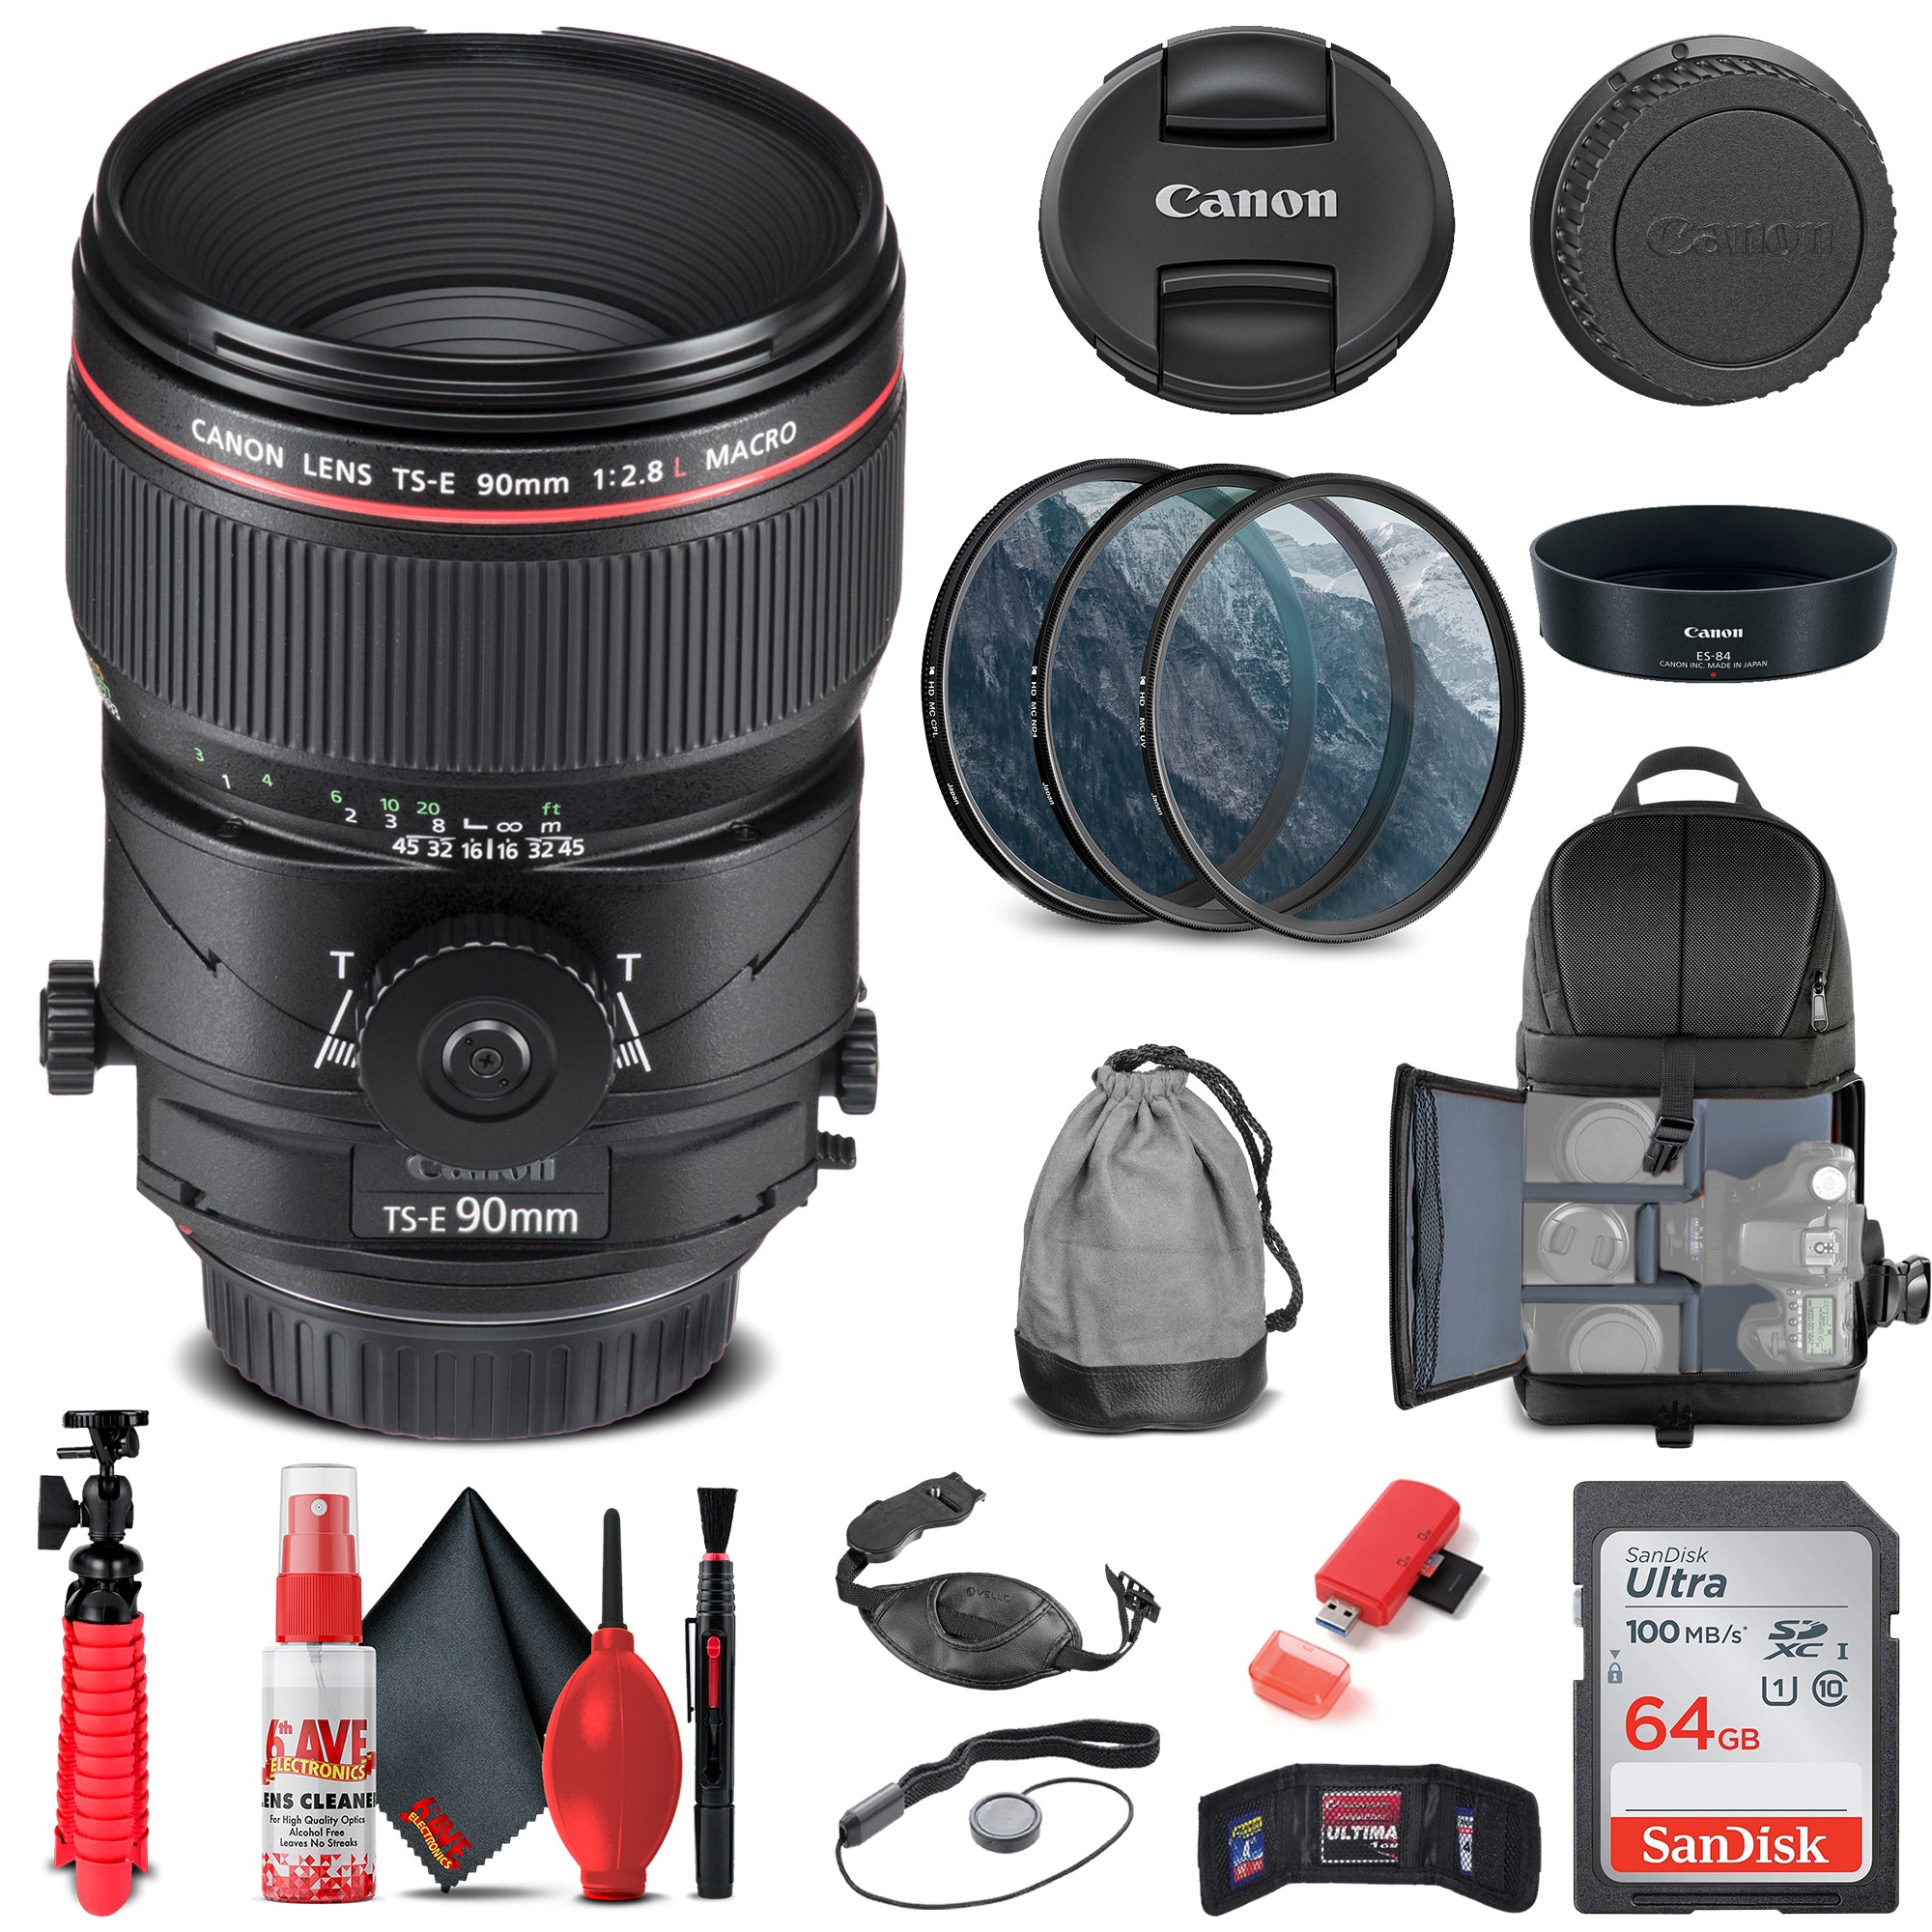 Canon TS-E 90mm f/2.8L Macro Tilt-Shift Lens (2274C002) + Filter Kit + More